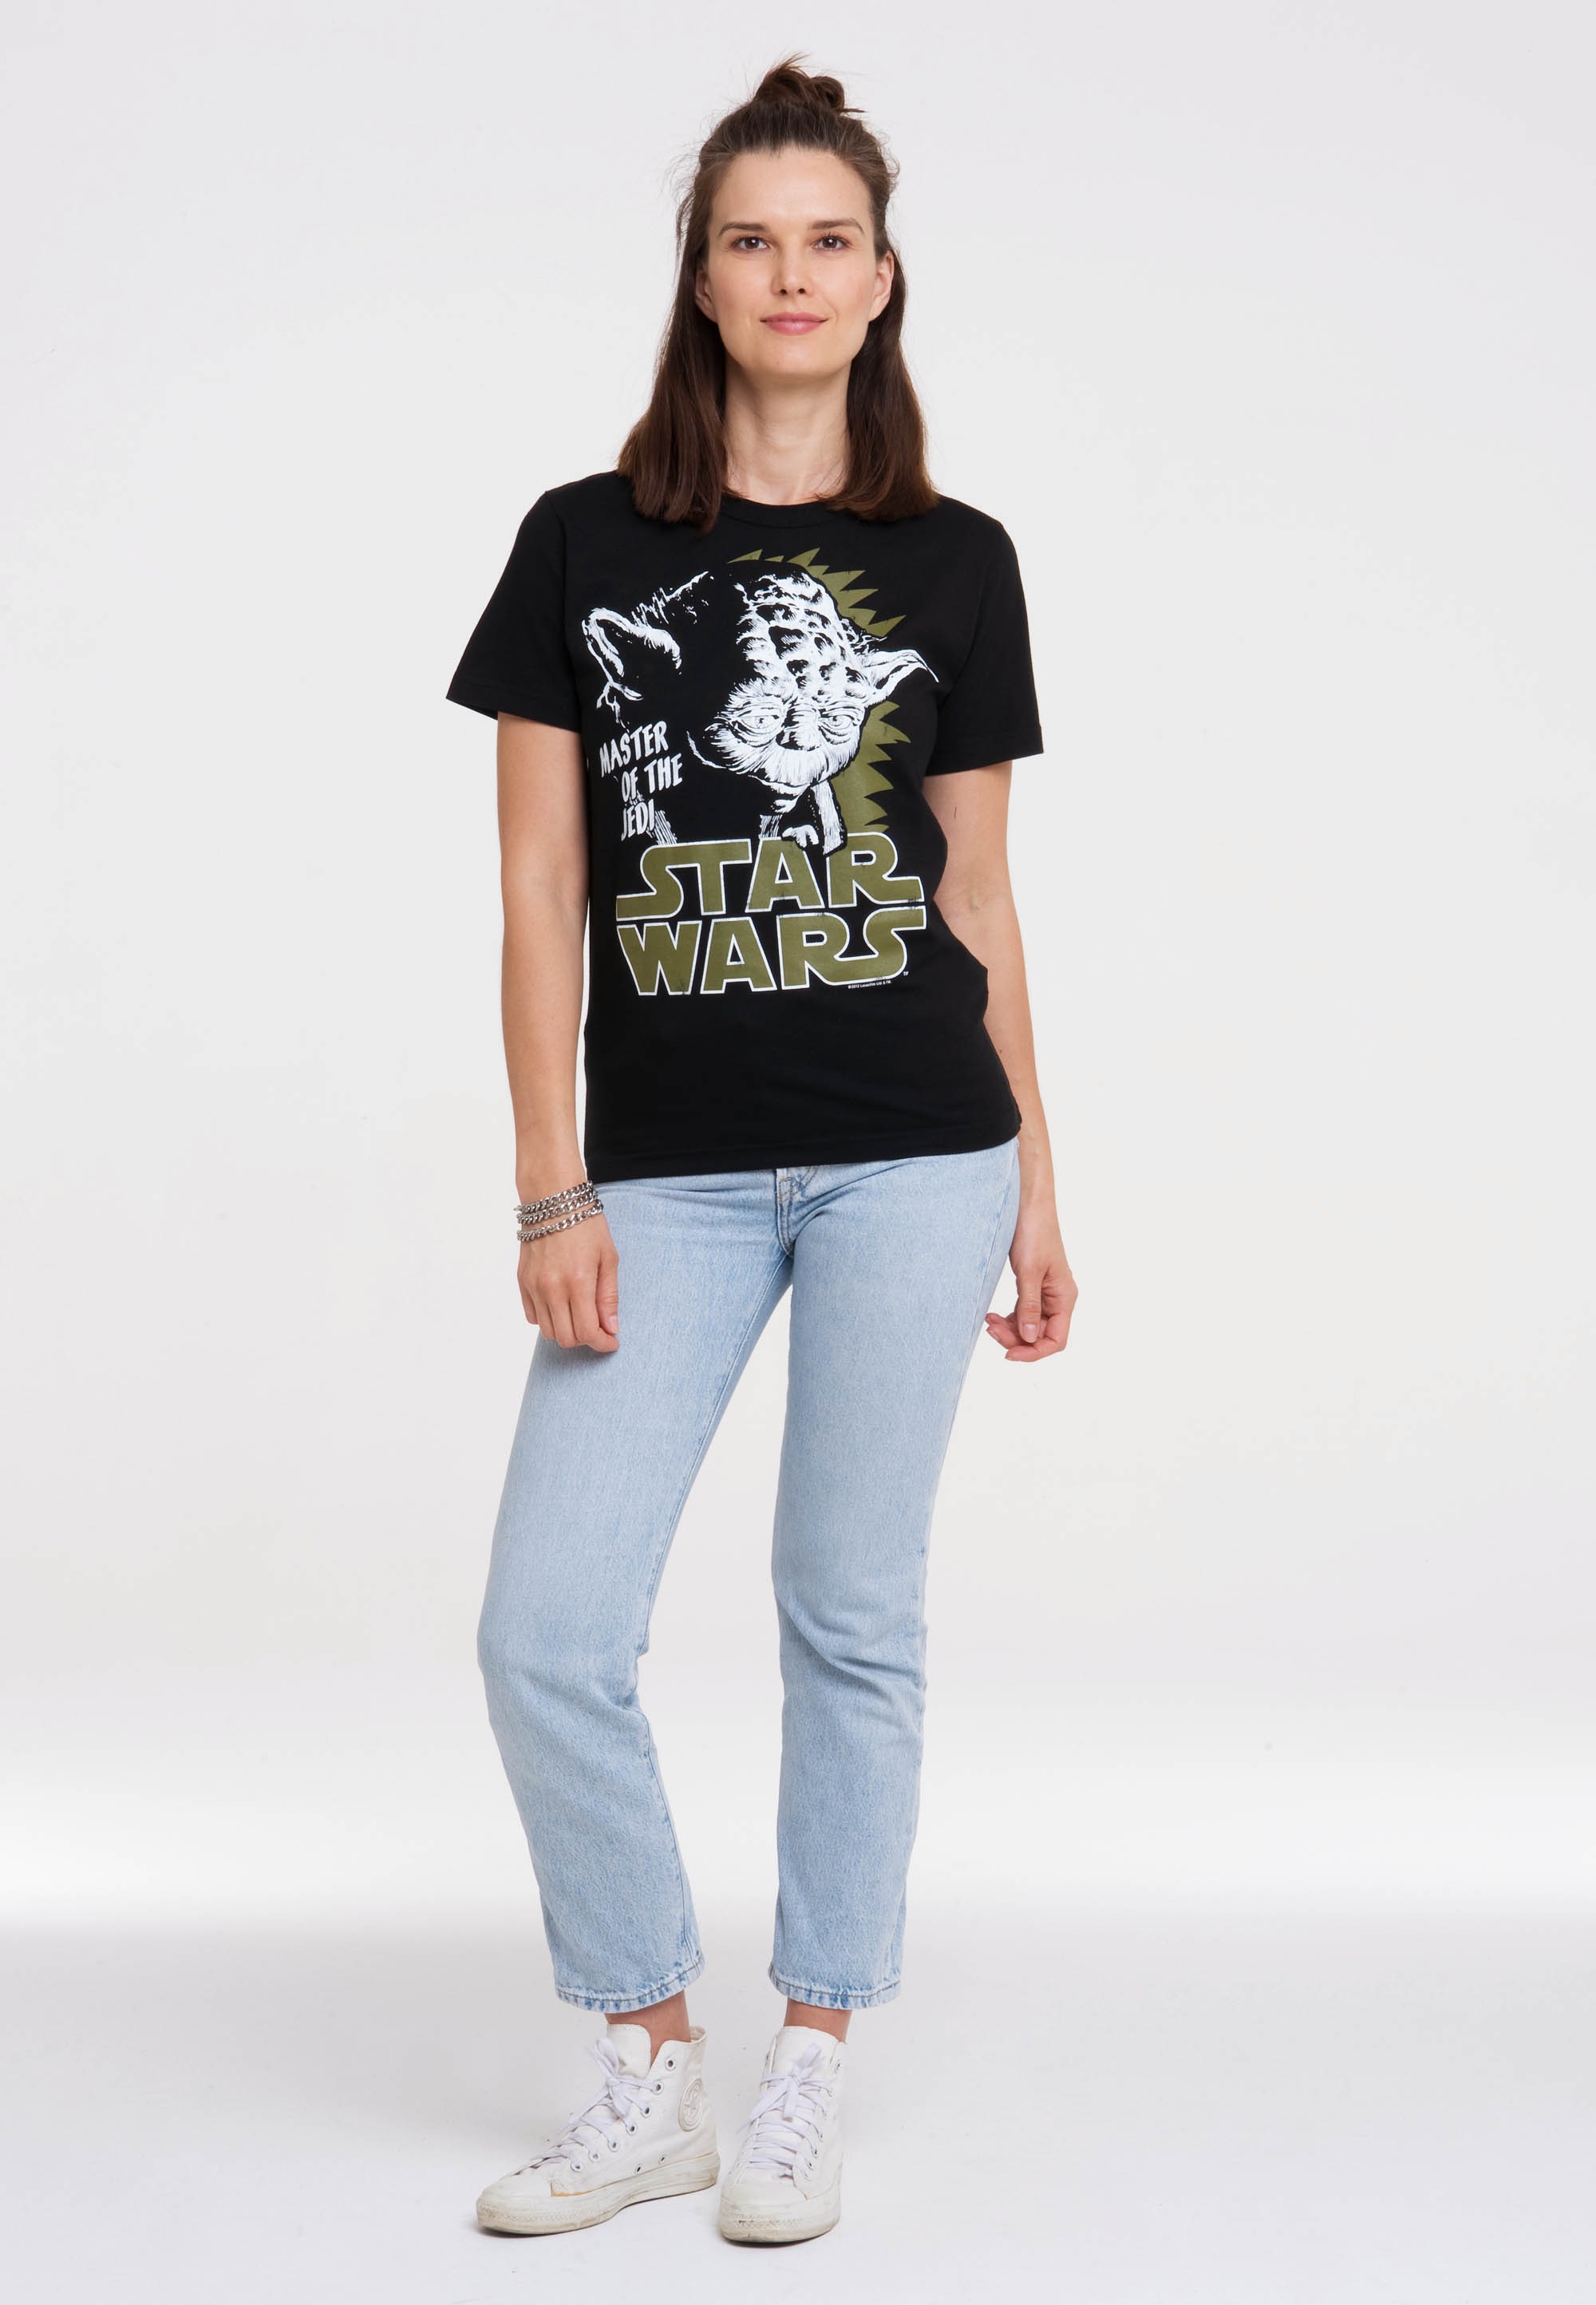 bestellen lizenziertem mit Yoda«, - LOGOSHIRT Wars »Star T-Shirt Print